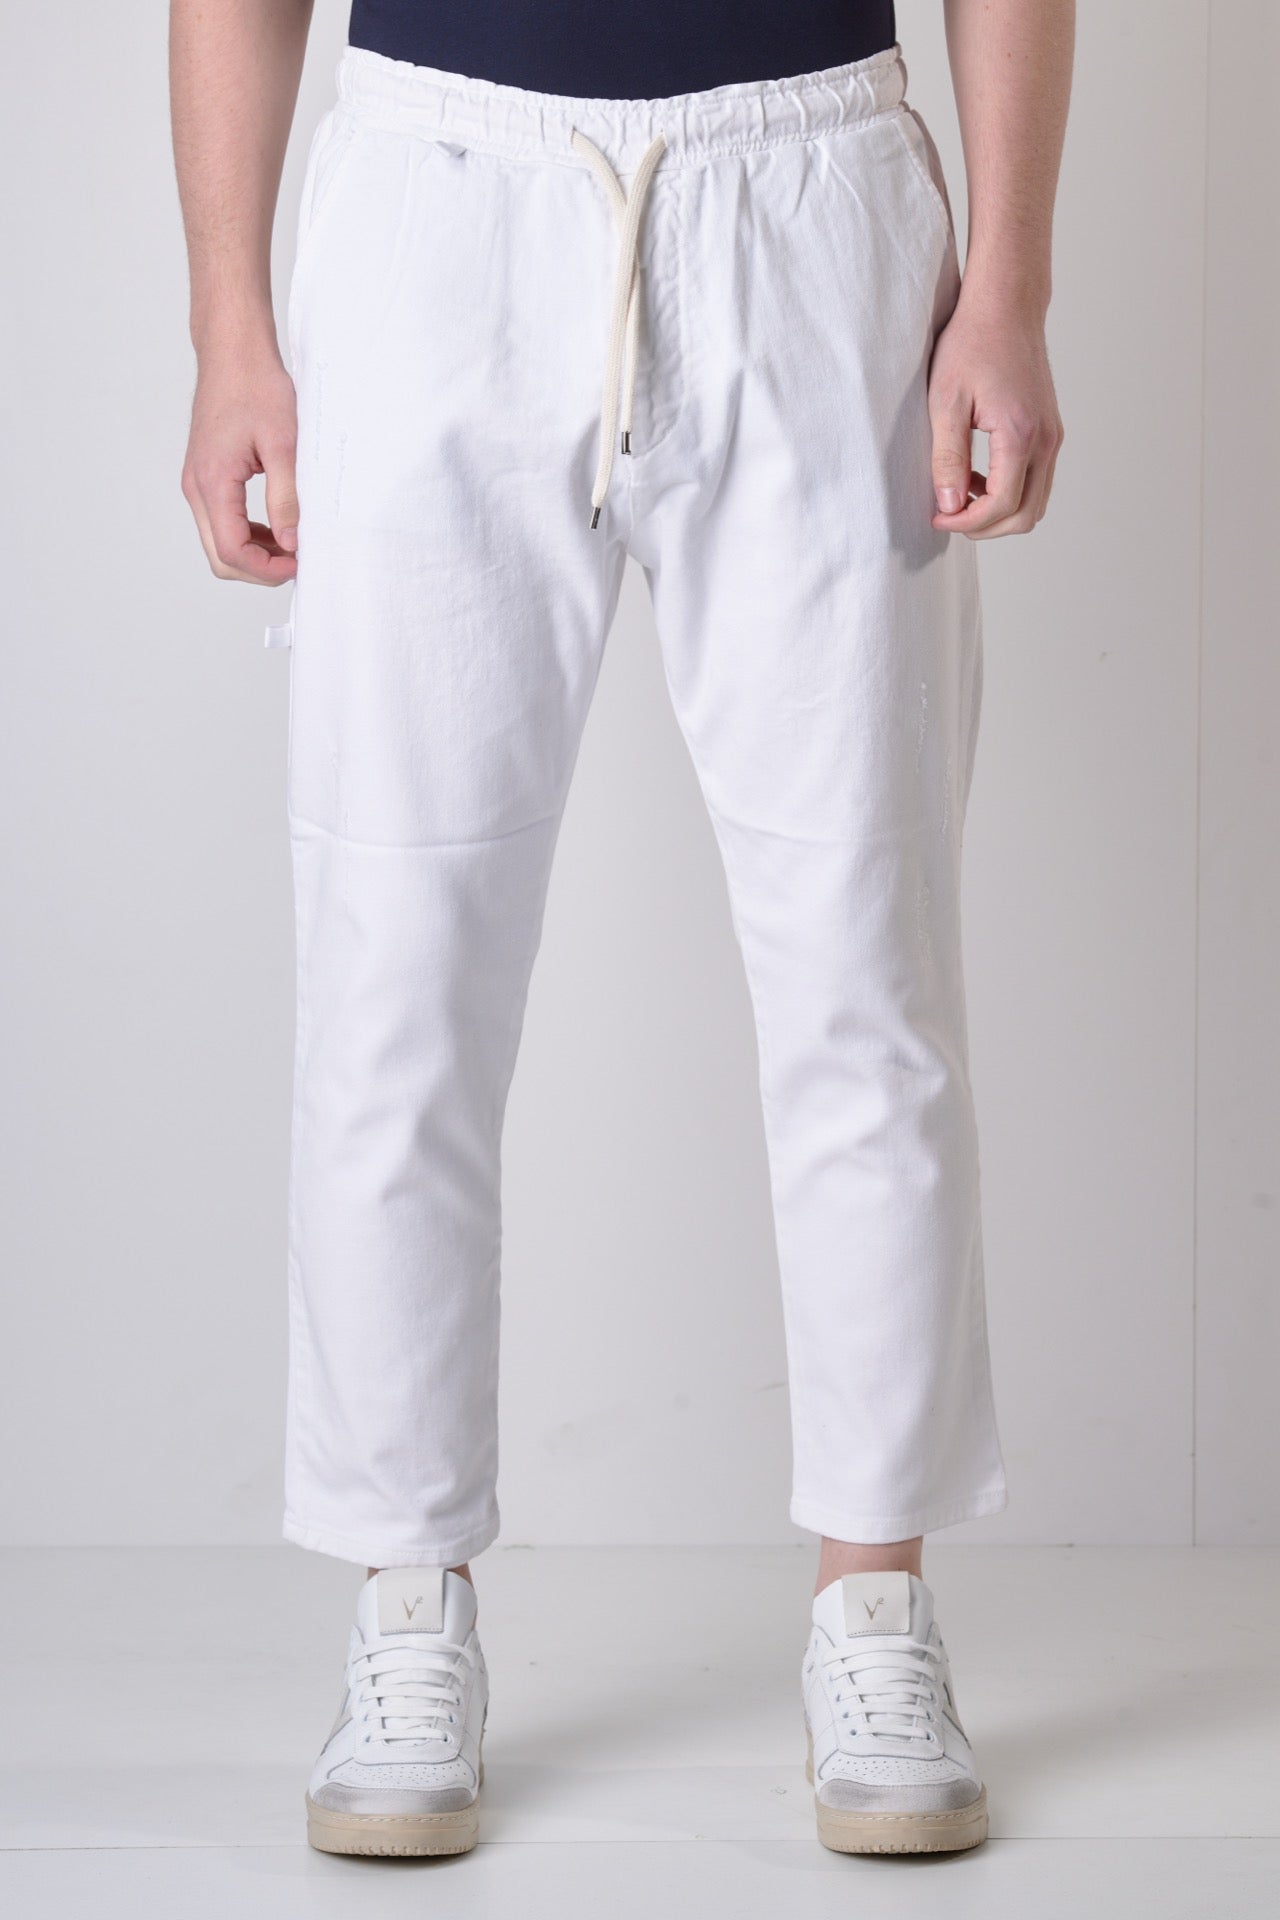 ALICANTE - Pantalone Drill Bianco con elastico